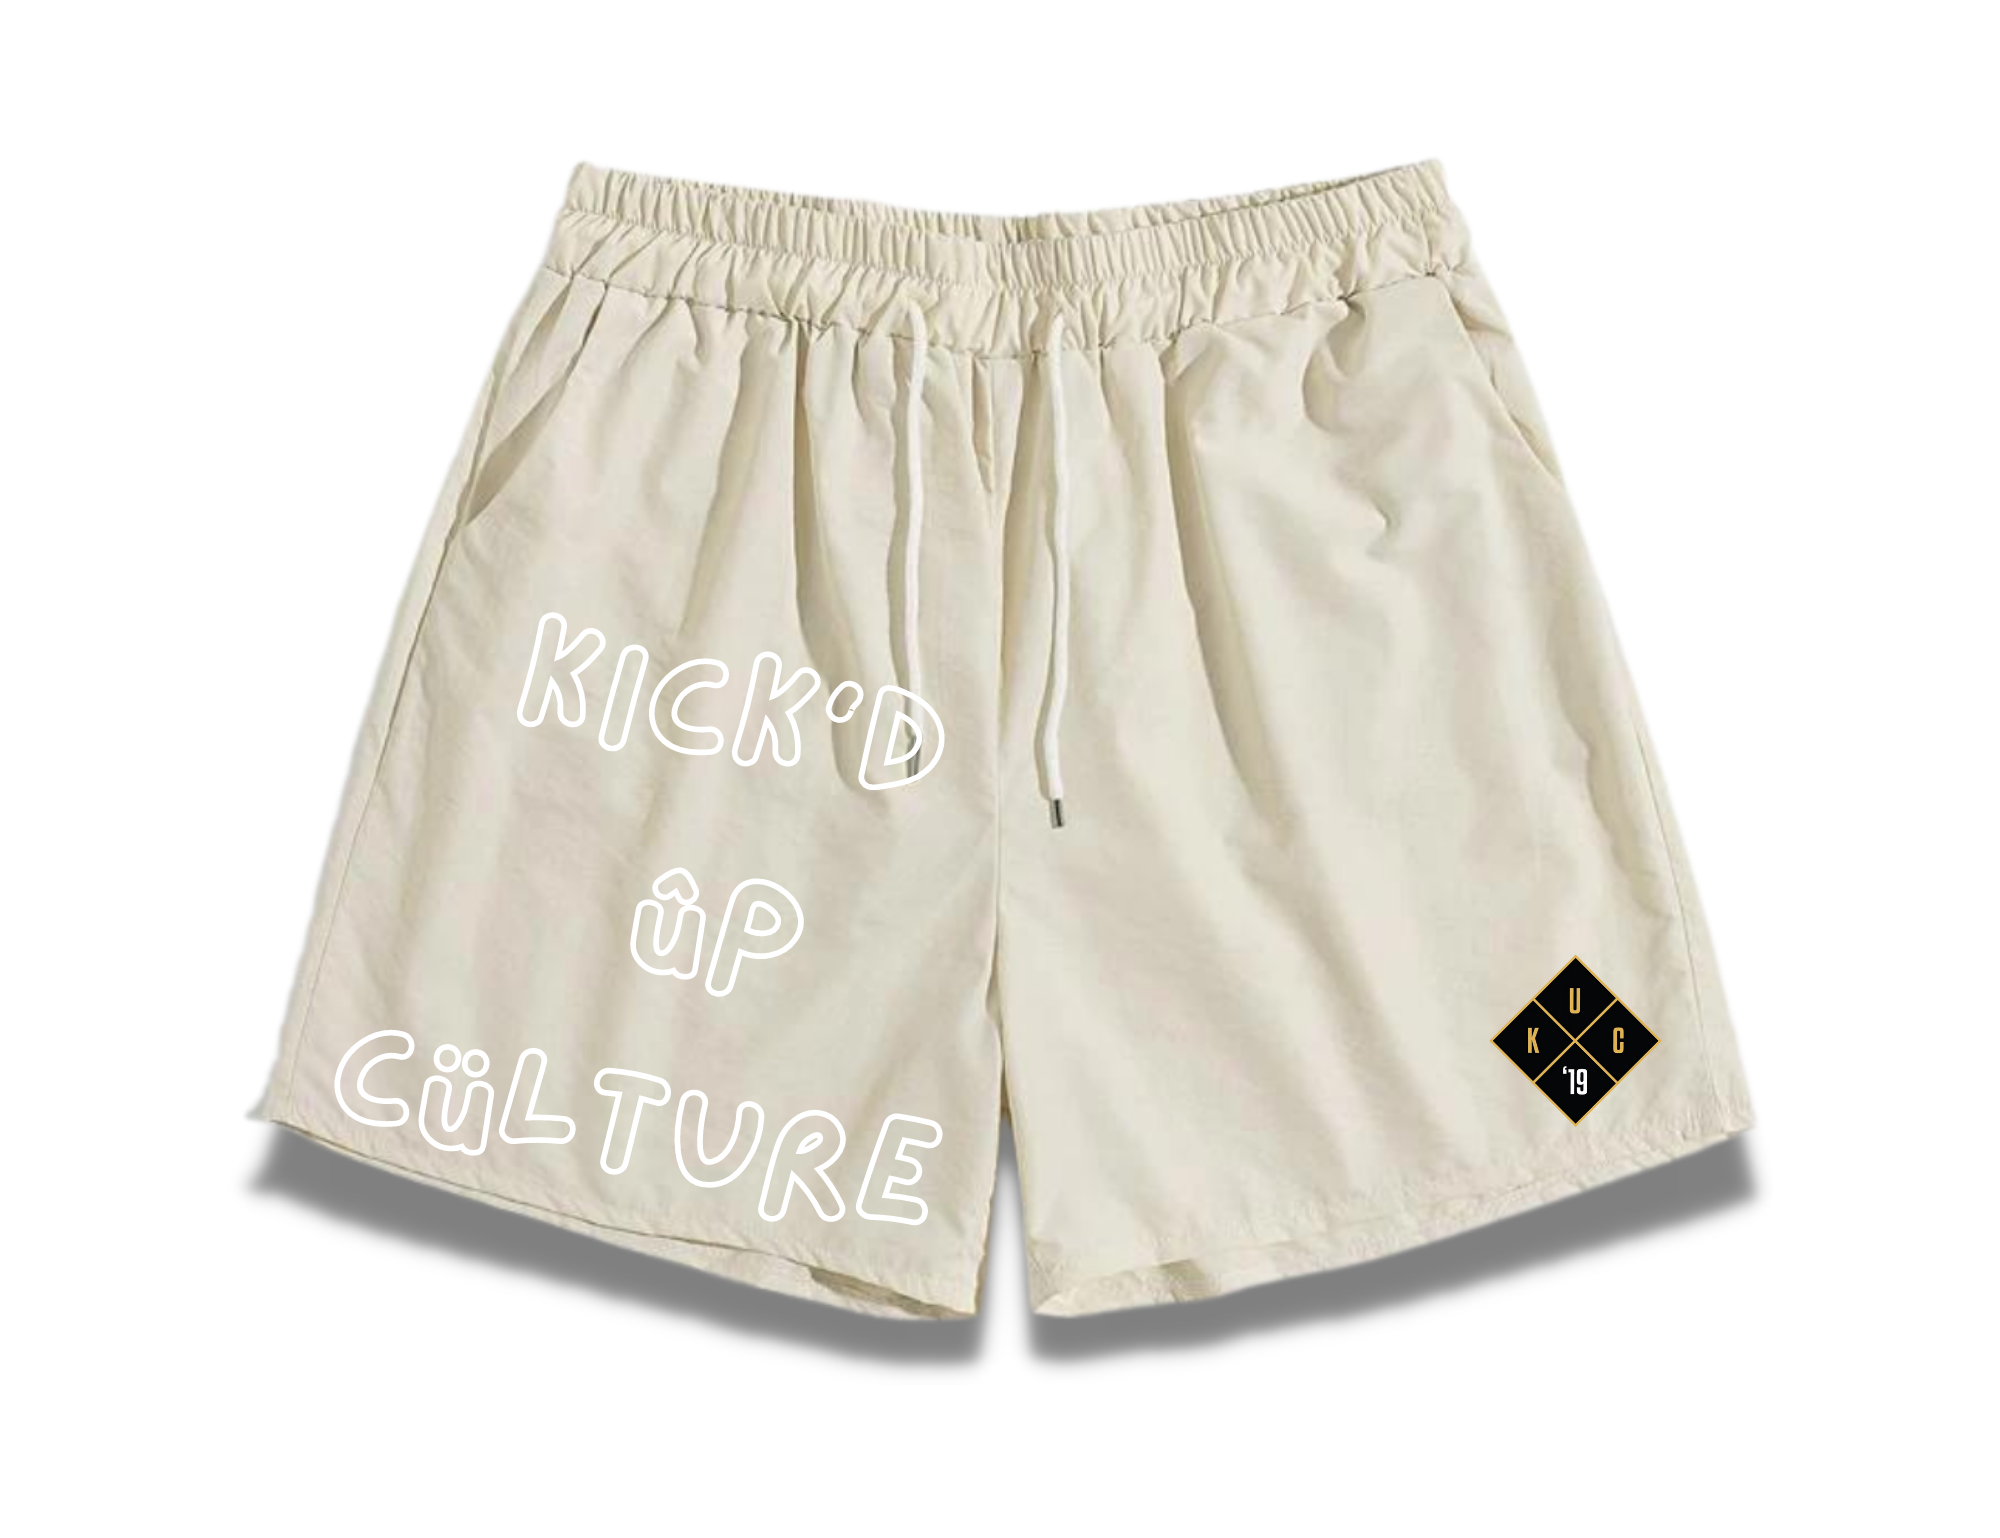 Mesh Shorts - Black – Kick'd Up Culture